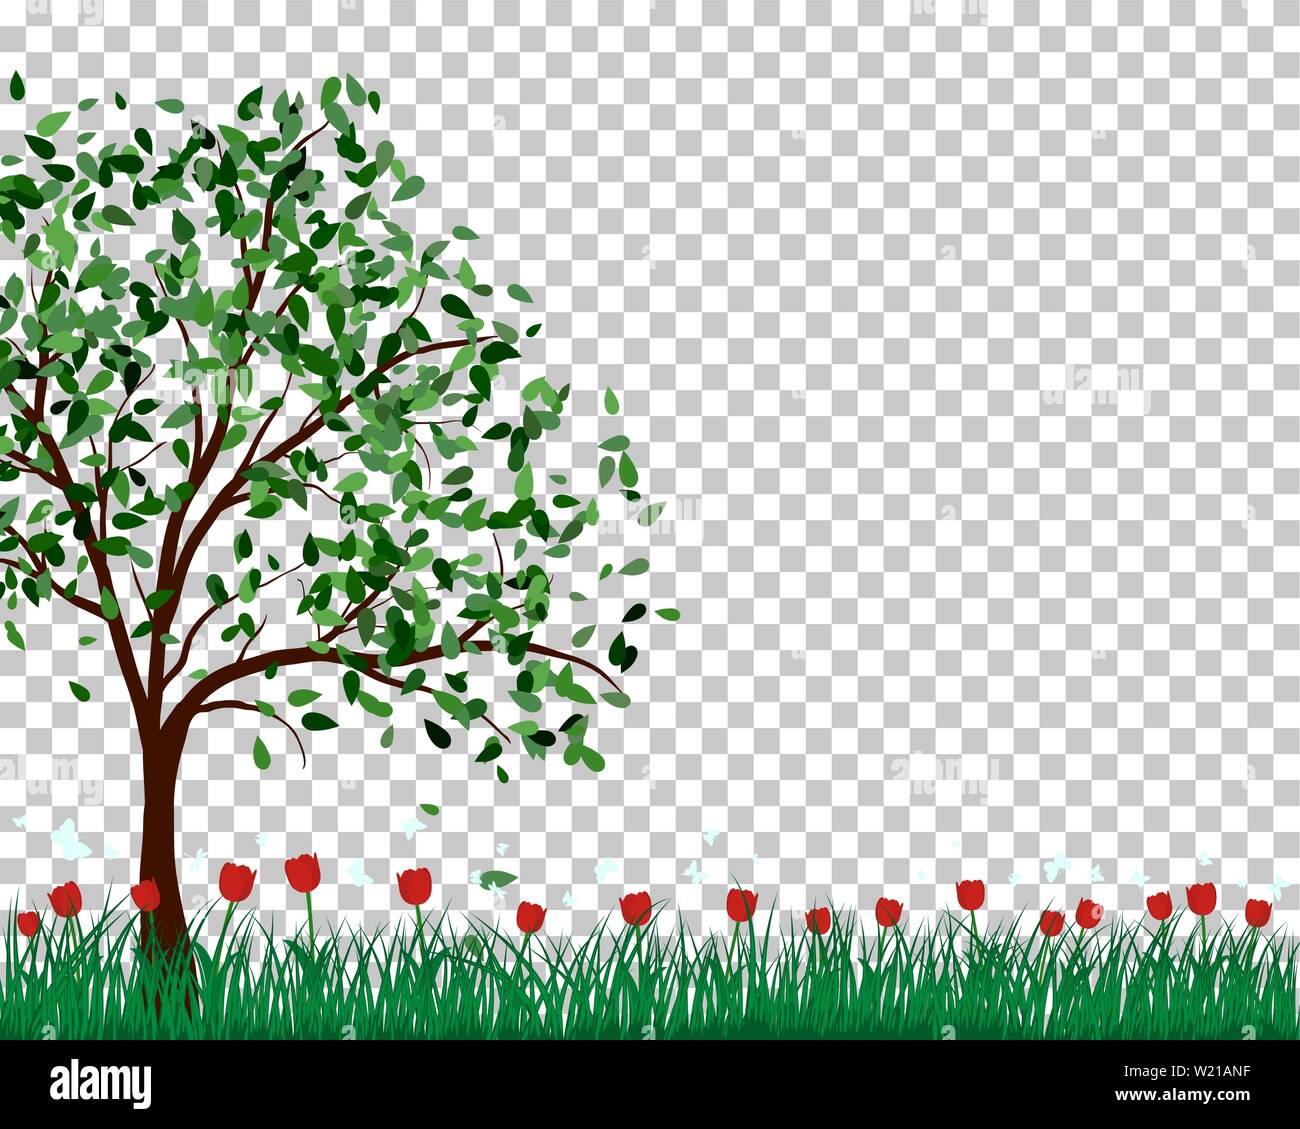 Summer meadow background avec des tulipes. Illustration vecteur EPS 10. Illustration de Vecteur